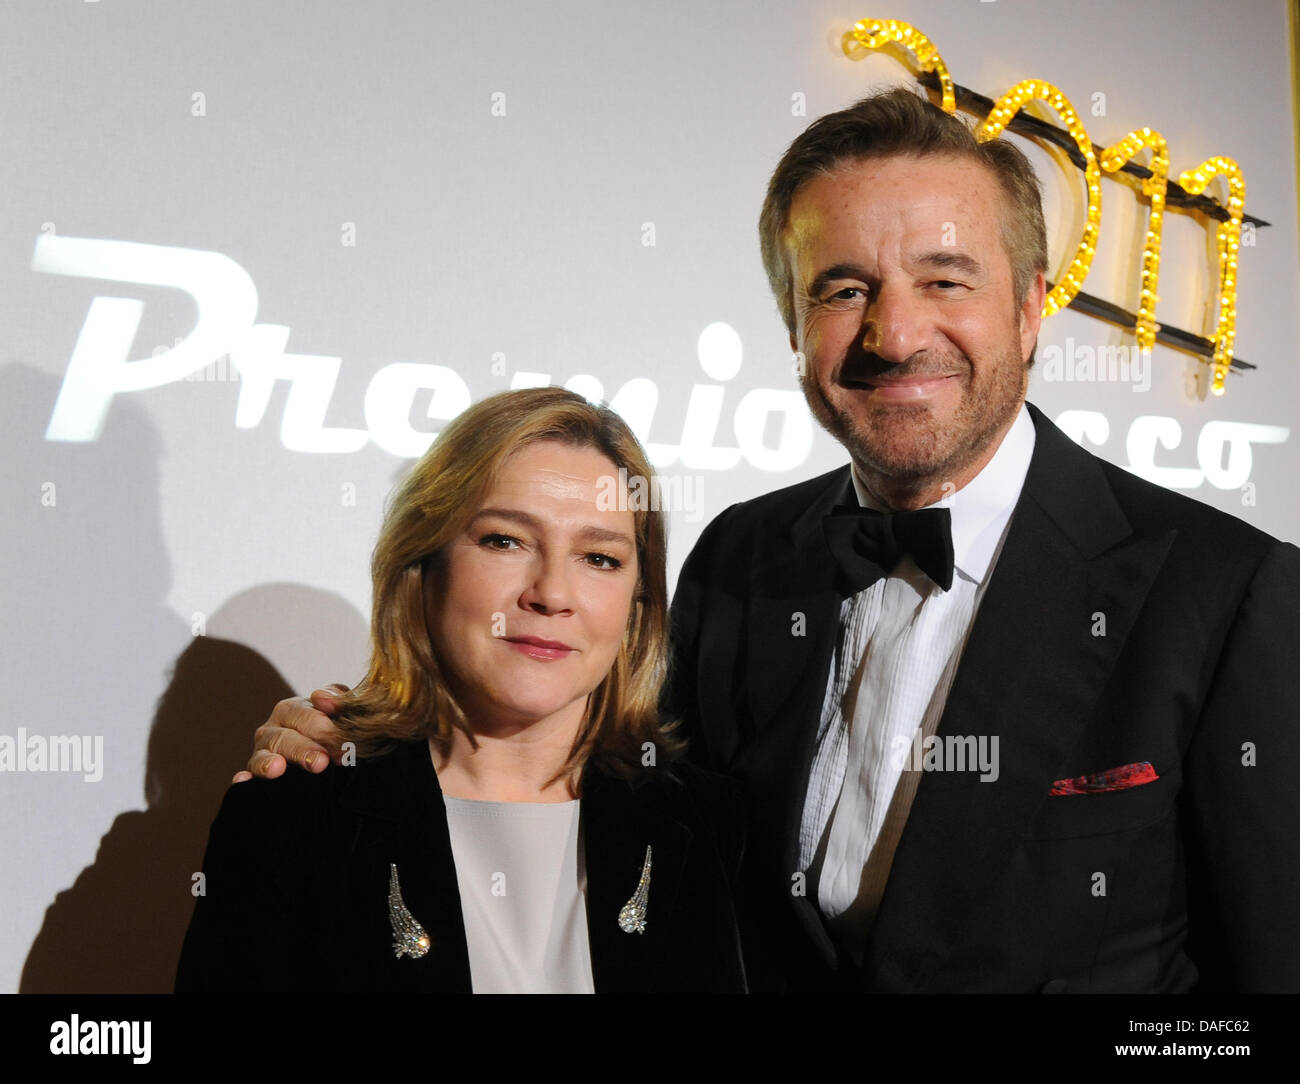 Der italienische Schauspieler Christian De Sica und seine Frau Silvia kommen am Freitag (18.02.2011) in Berlin zum italienischen Filmball 'Notte delle Stelle'. Im Rahmen des Filmballs wird alljährlich der 'Premio Bacco' verliehen. Foto: Britta Pedersen dpa  +++(c) dpa - Bildfunk+++ Stock Photo